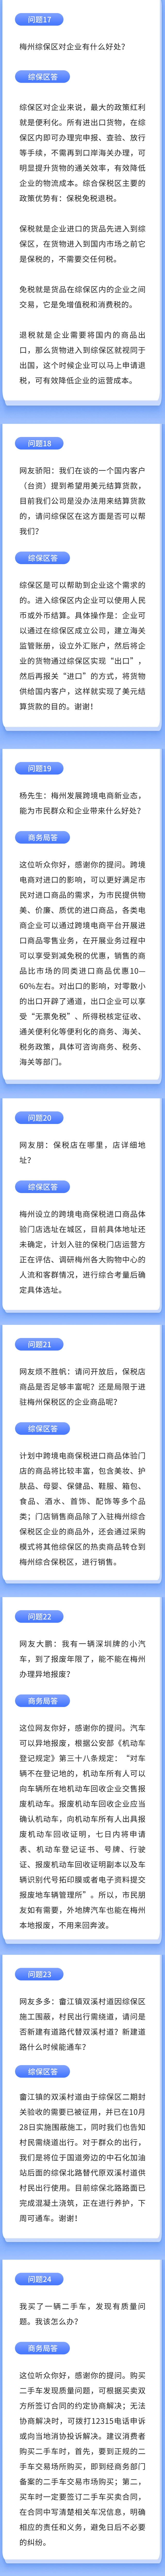 融媒体政务工作报告文章长图 (3).jpg